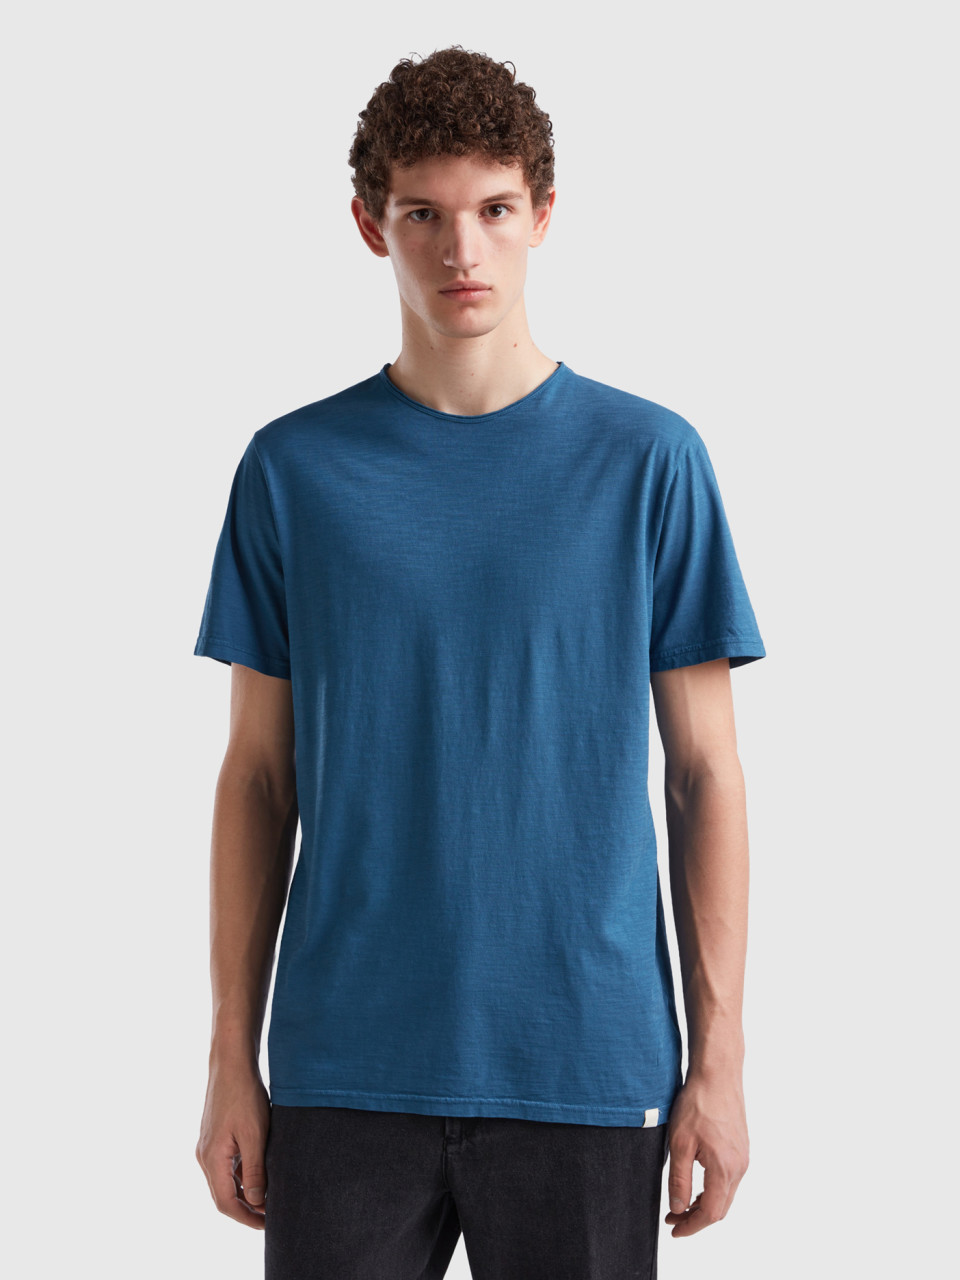 Benetton, Air Force Blue T-shirt In Slub Cotton, Air Force Blue, Men